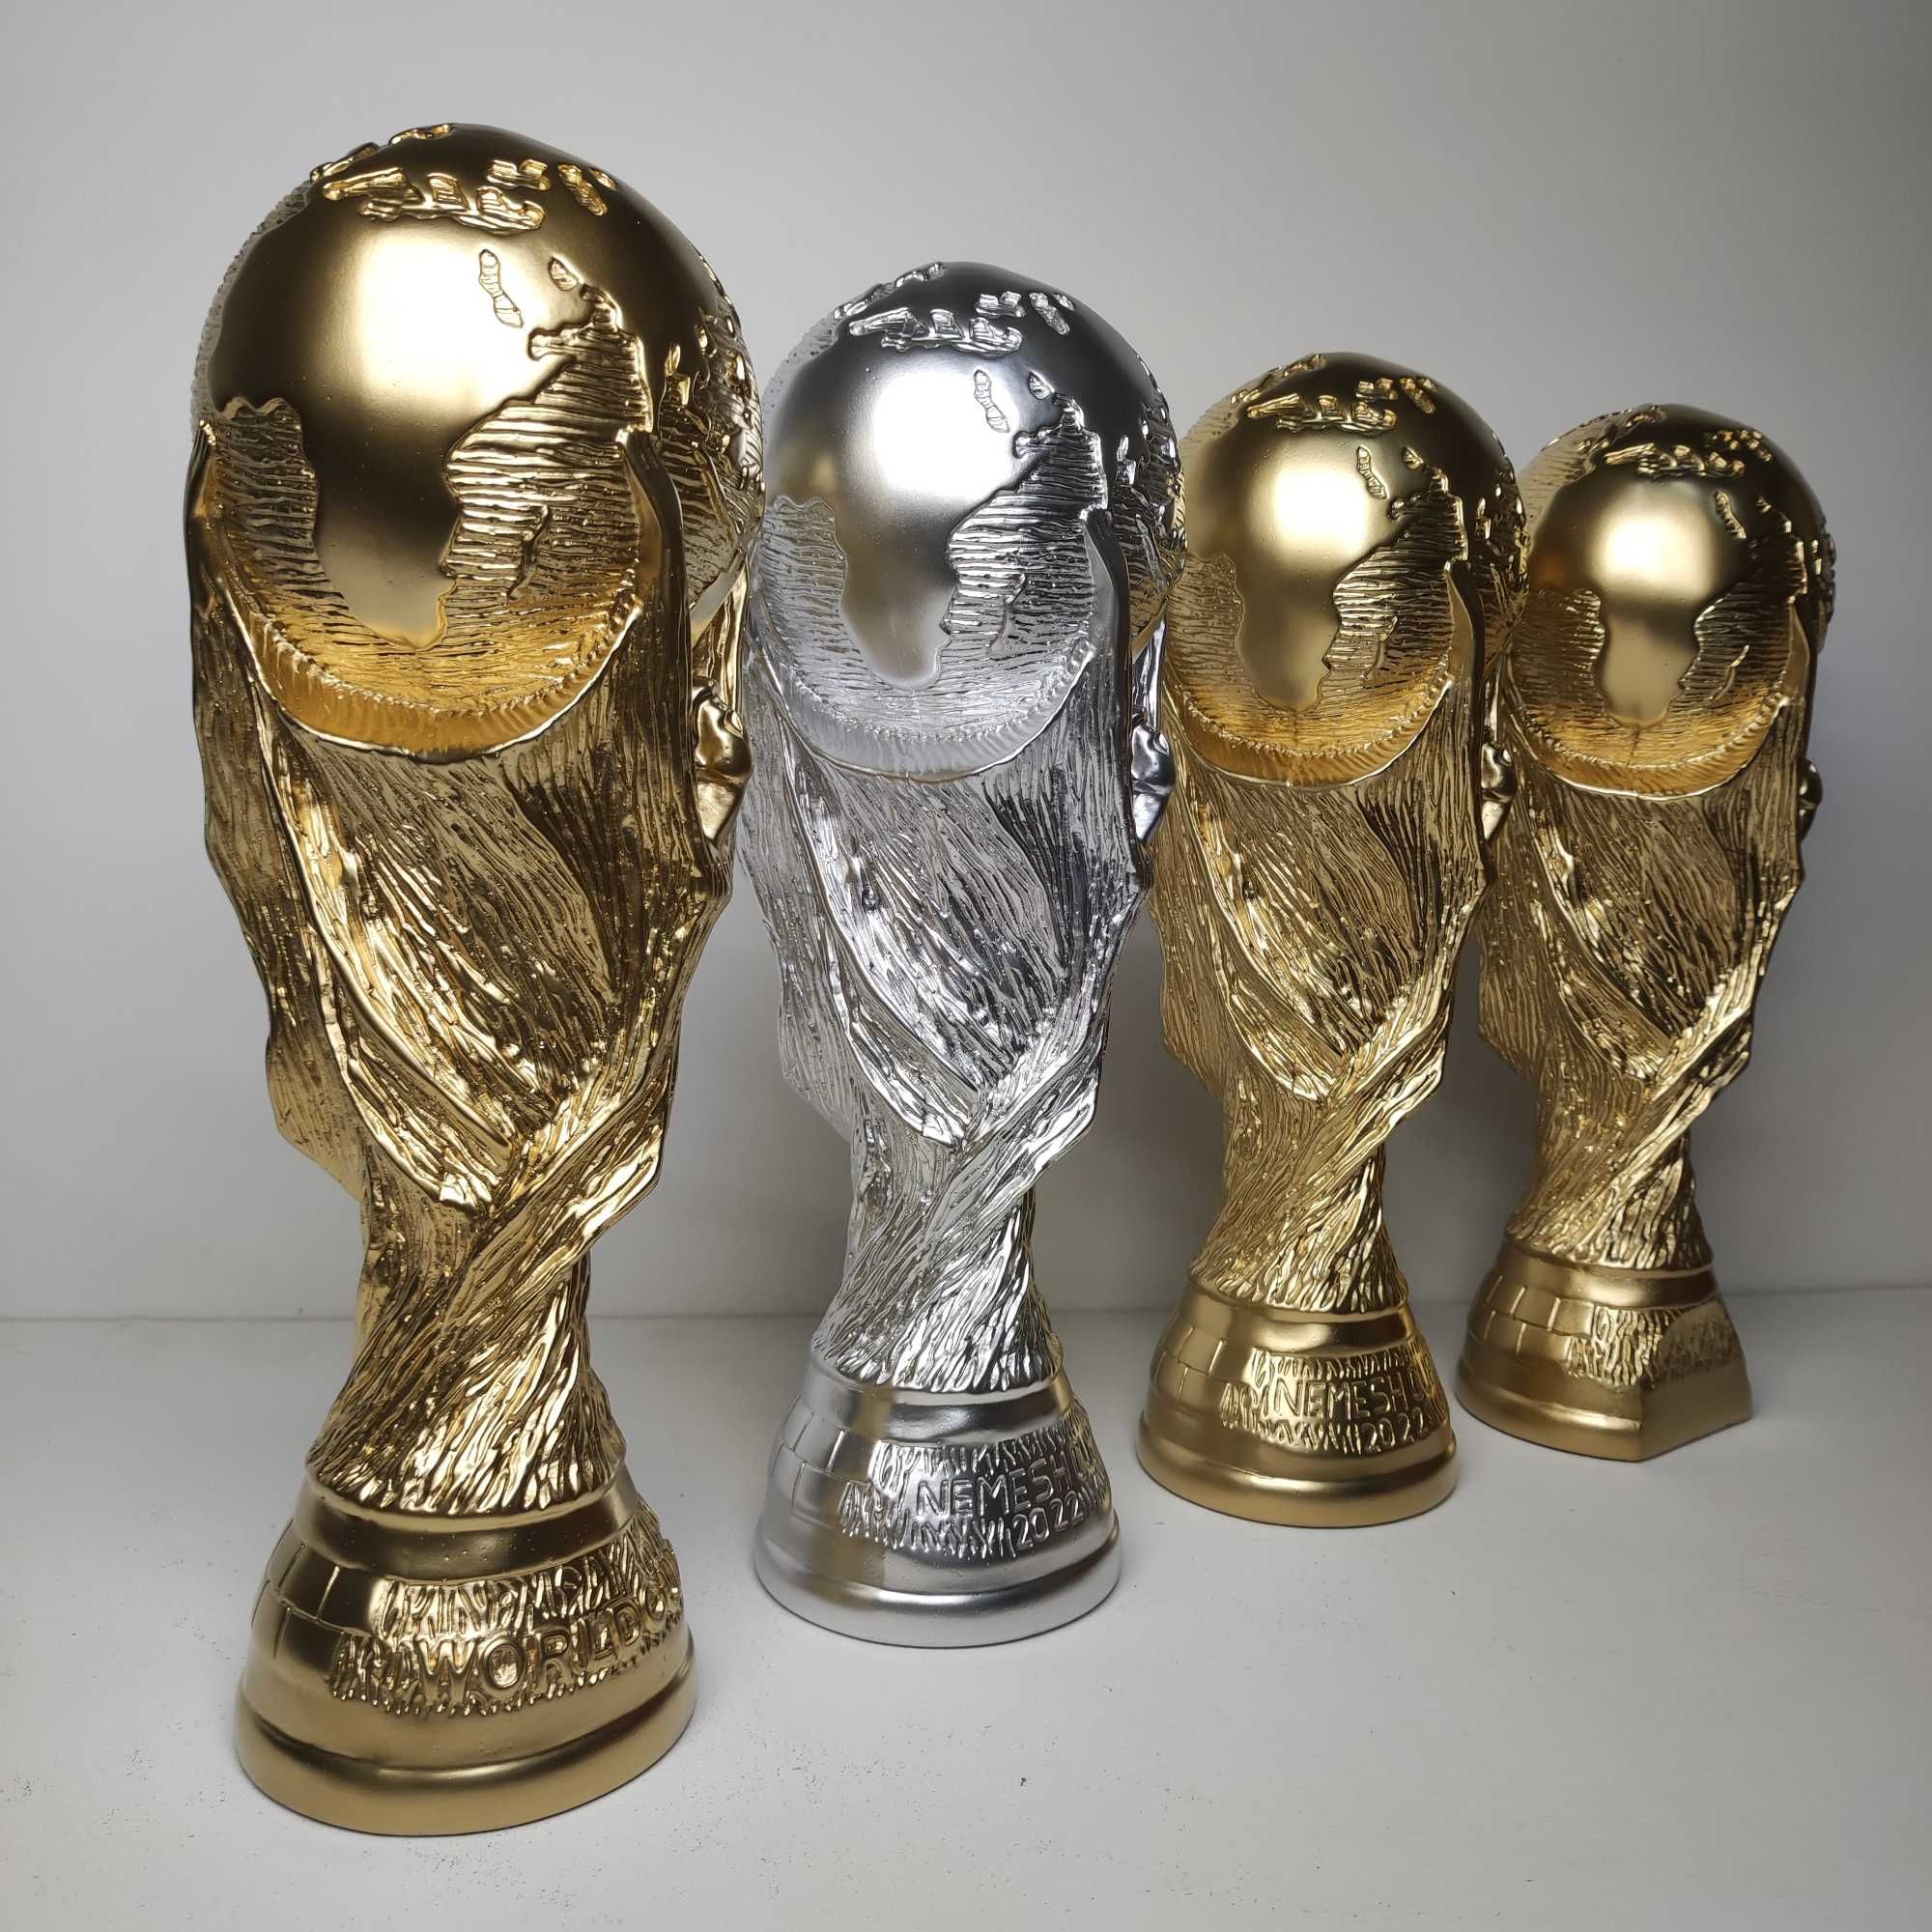 Кубок мира футбольный супер подарок 34 см